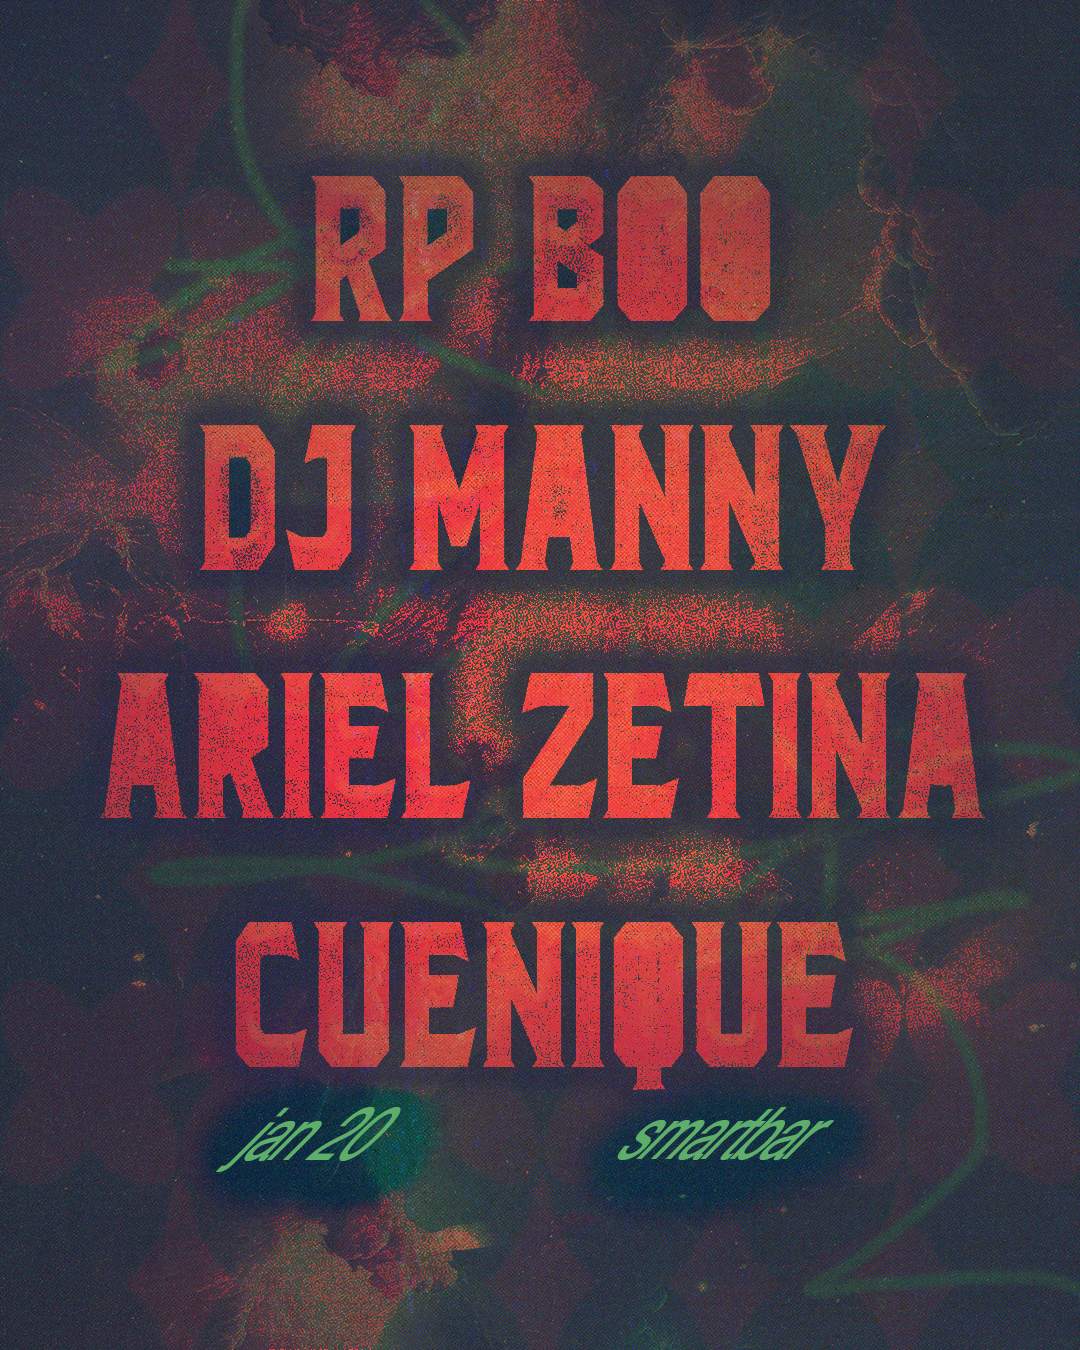 RP Boo - DJ Manny - Ariel Zetina - Cuenique - Página frontal